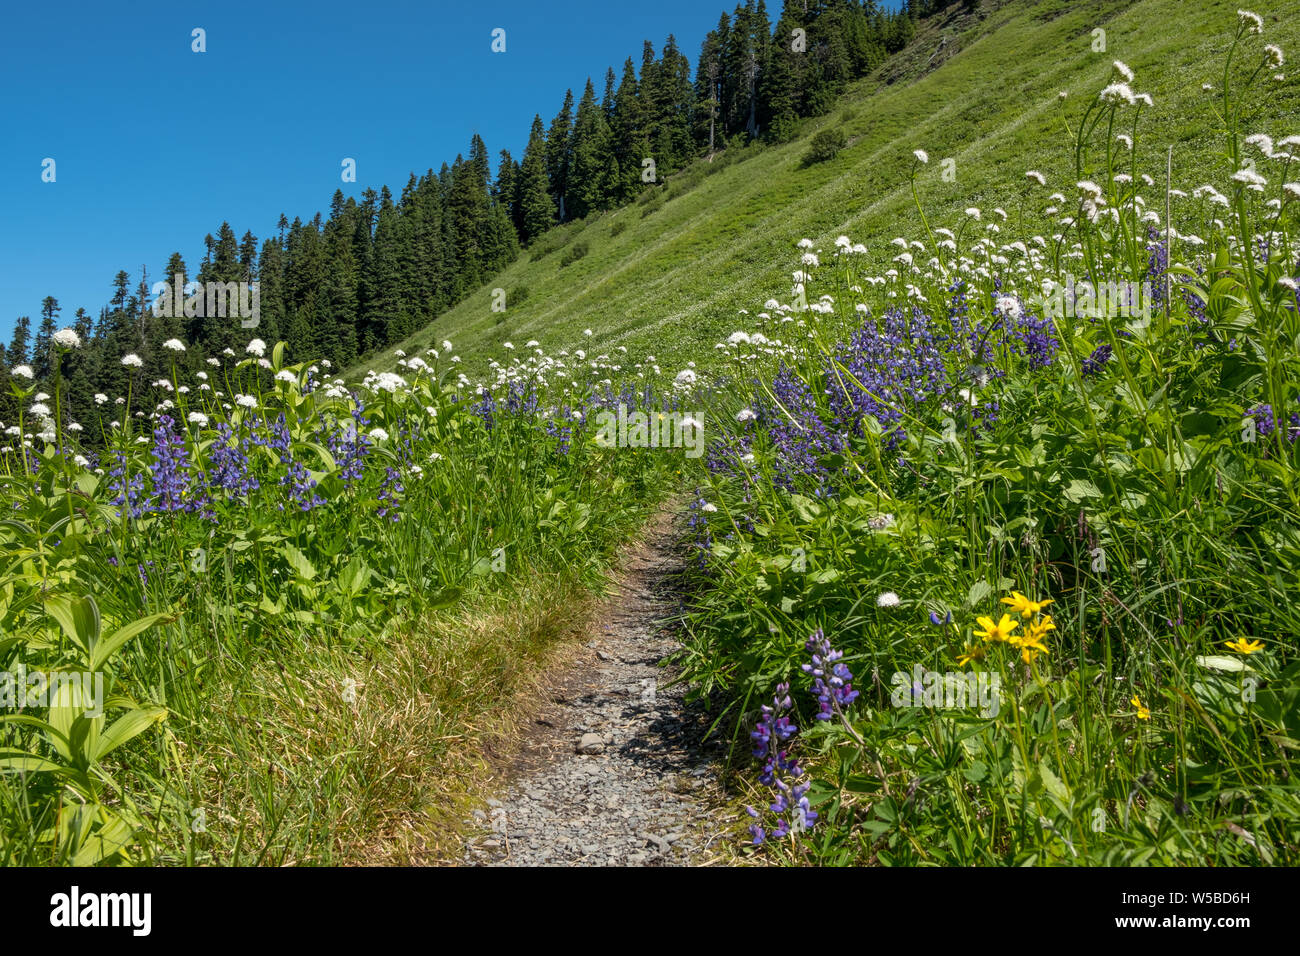 Alpine praderas salvajes en plena floración con altramuz azul y un surtido de flores blancas y amarillas. Lagos Damfino Trail, Mt Baker, Washington, EE.UU. Foto de stock